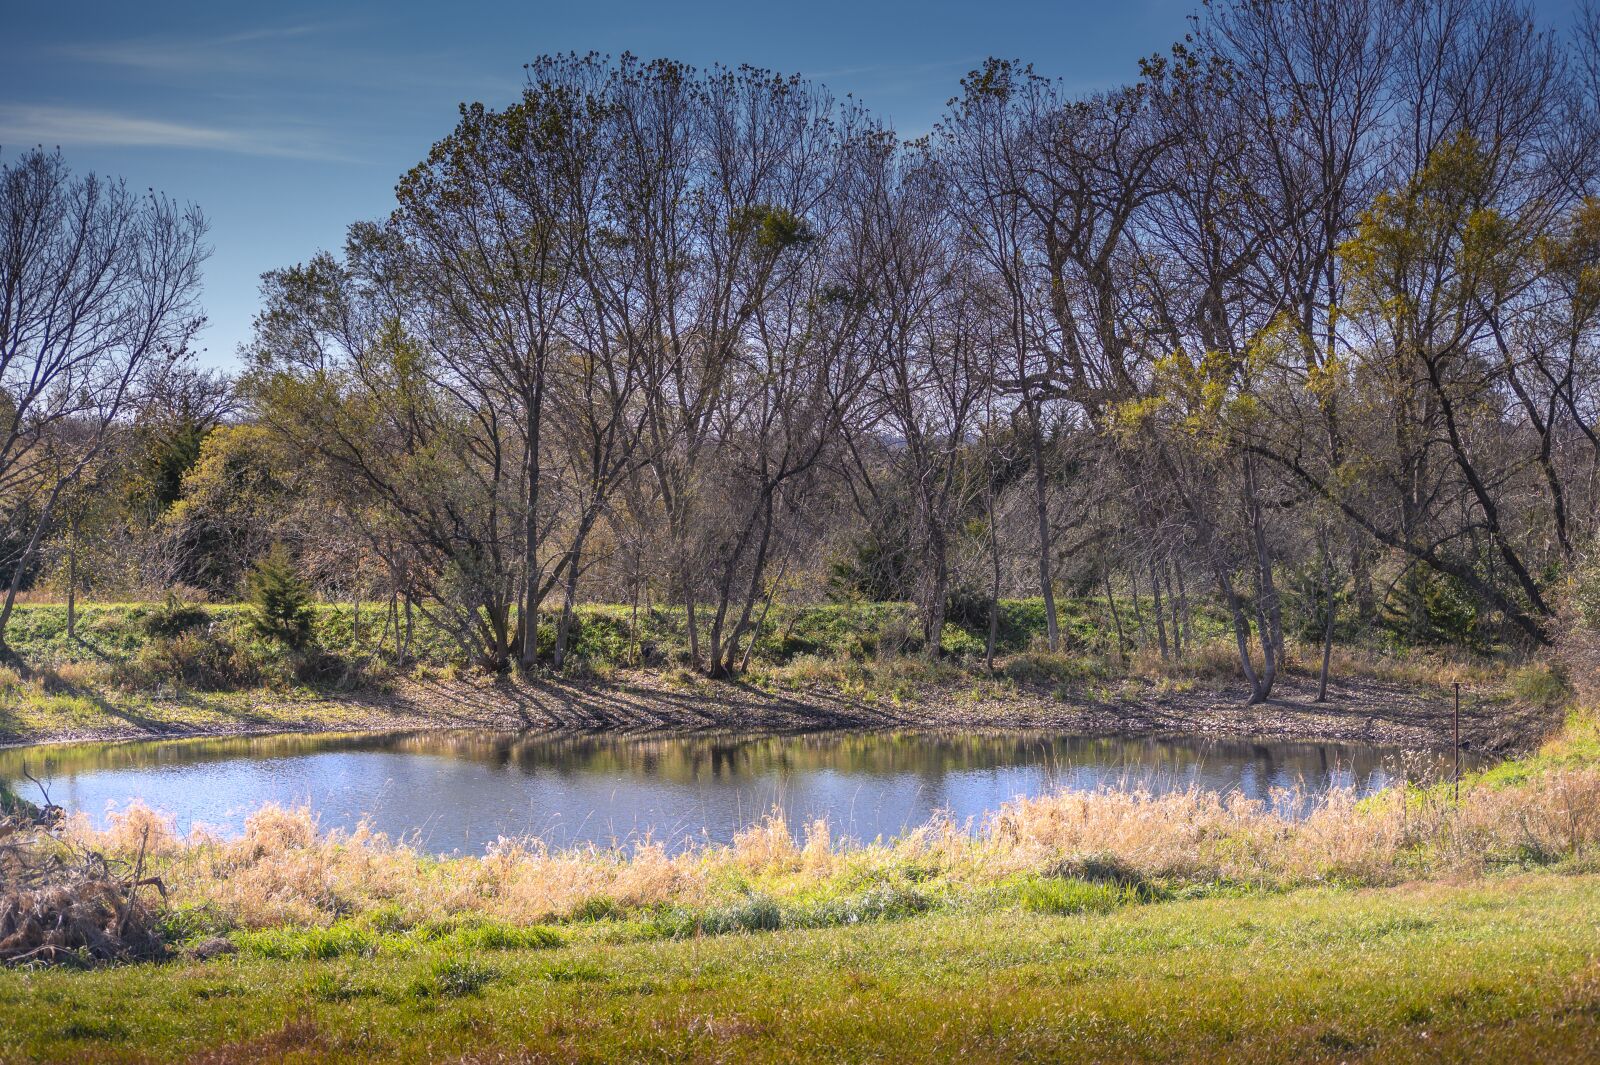 Nikon Z7 sample photo. Pond, trees, landscape photography